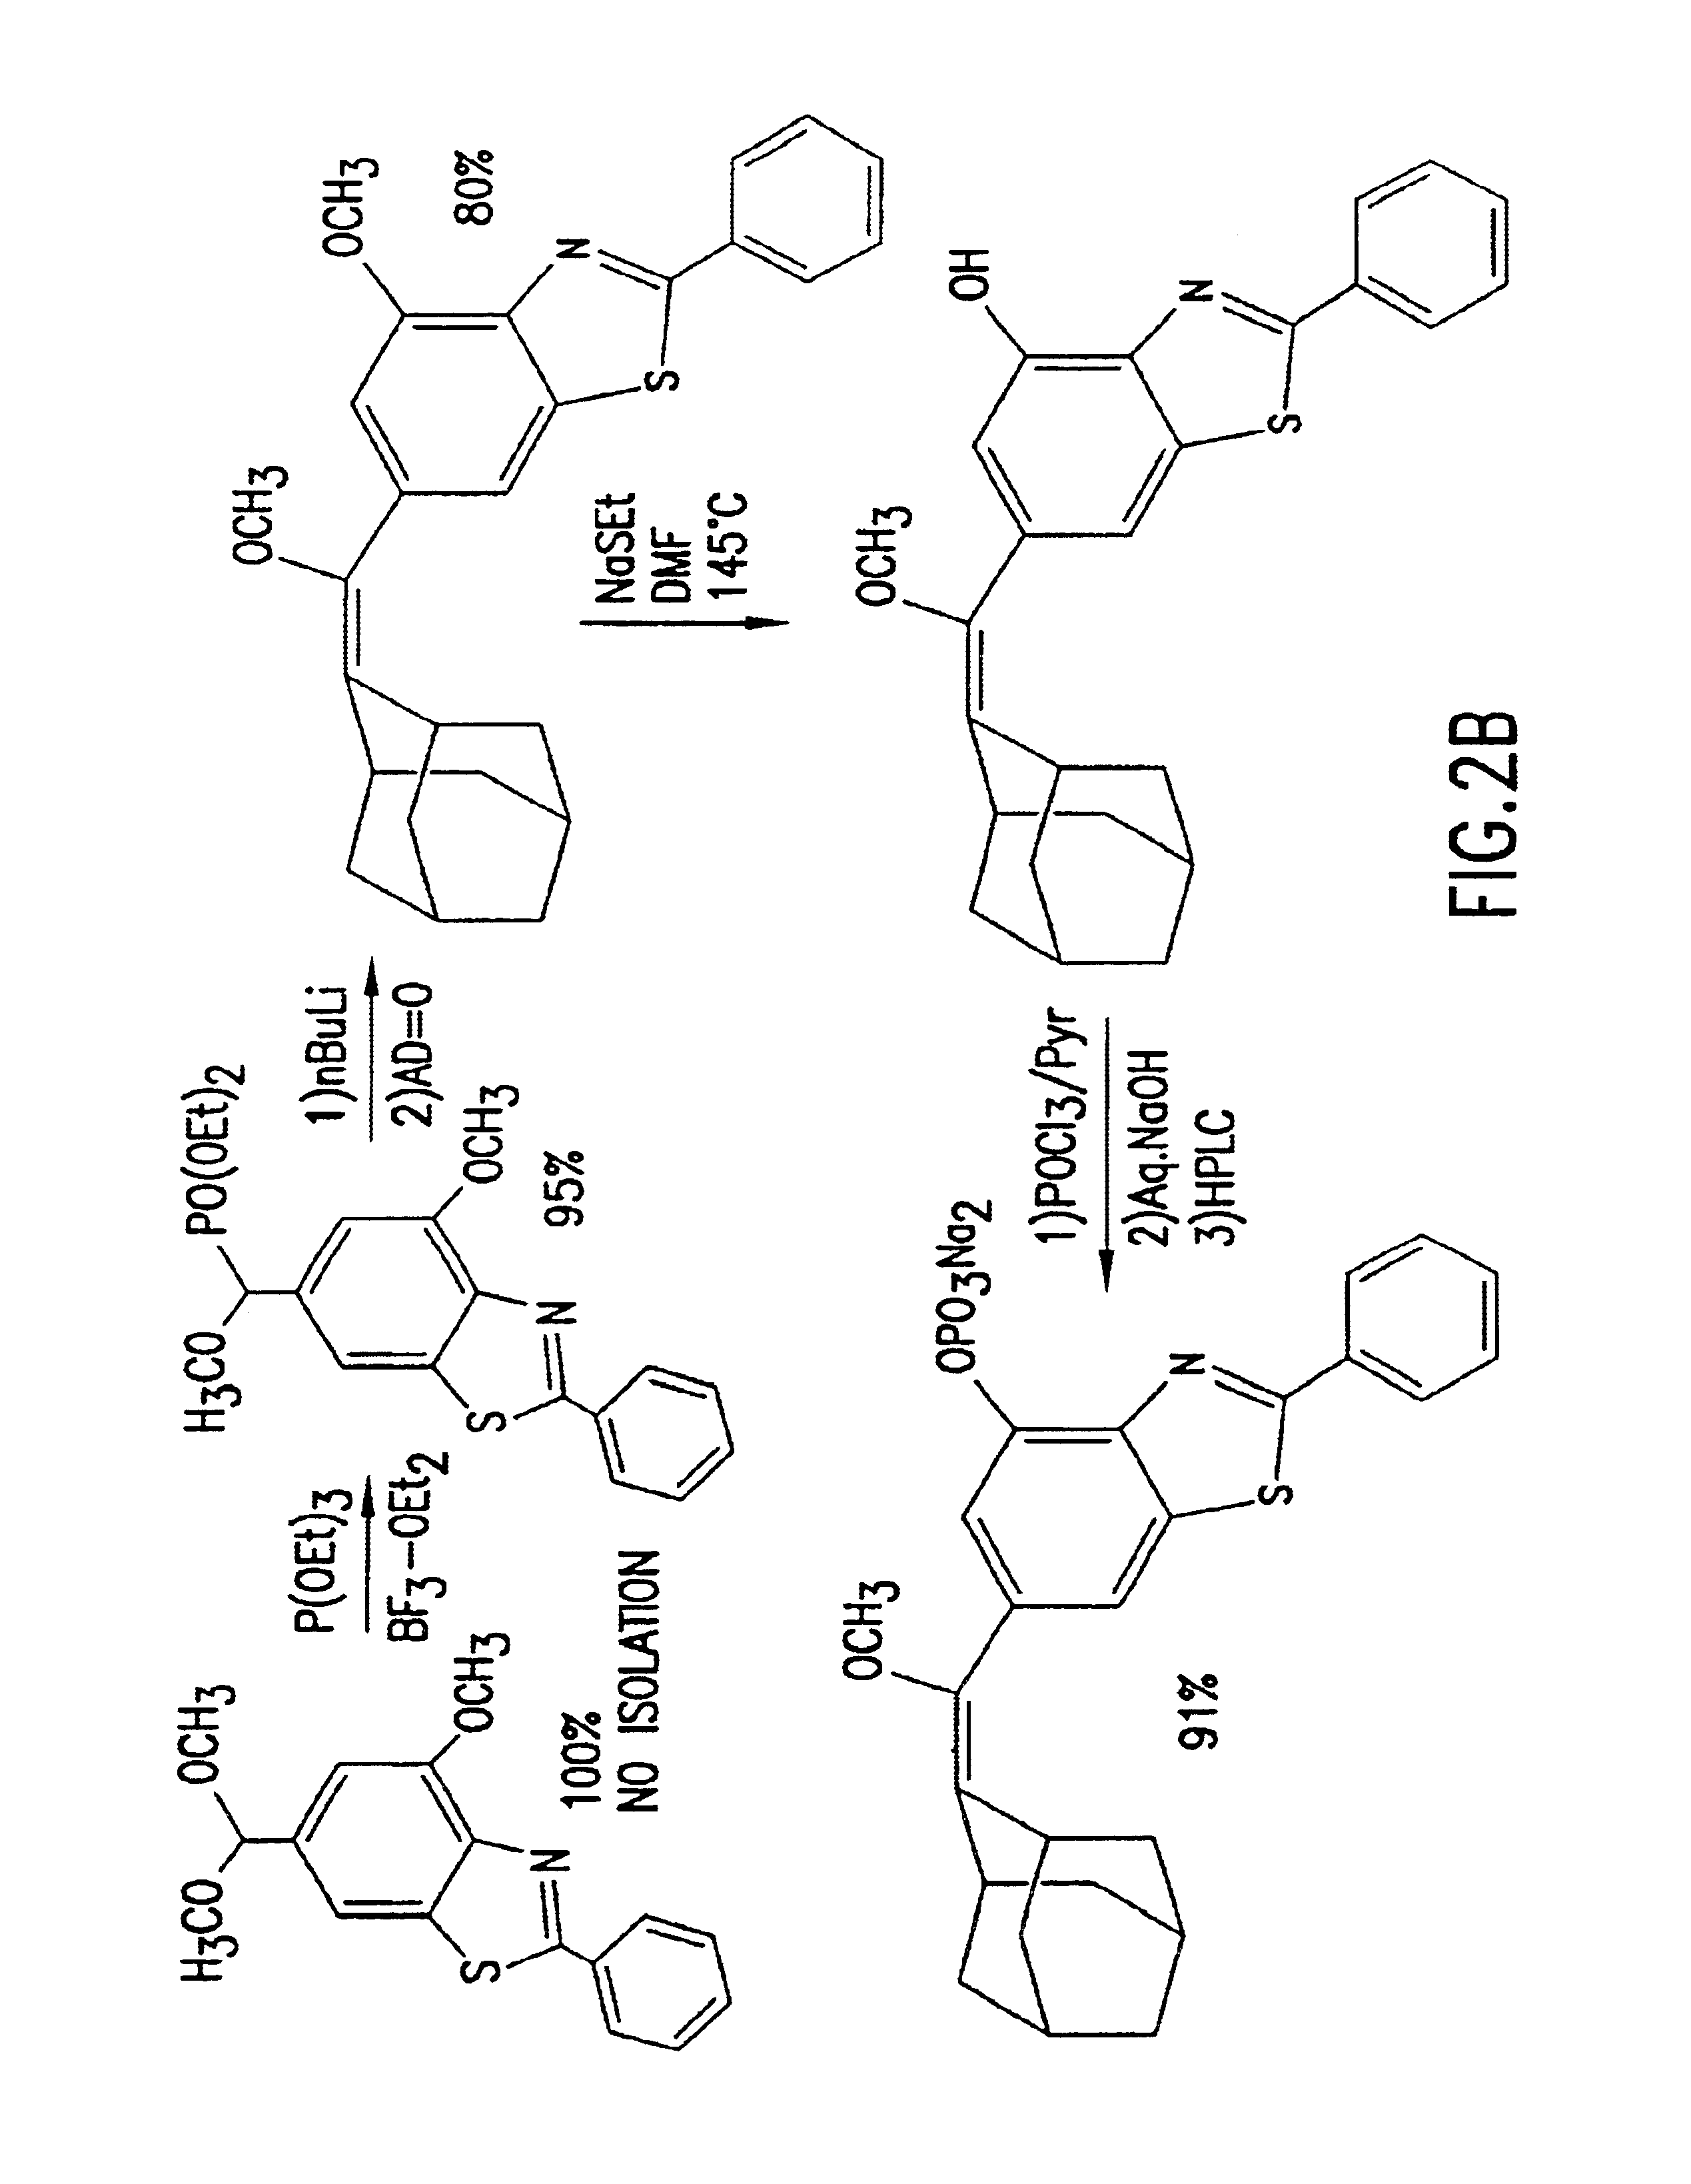 Benzothiazole dioxetanes